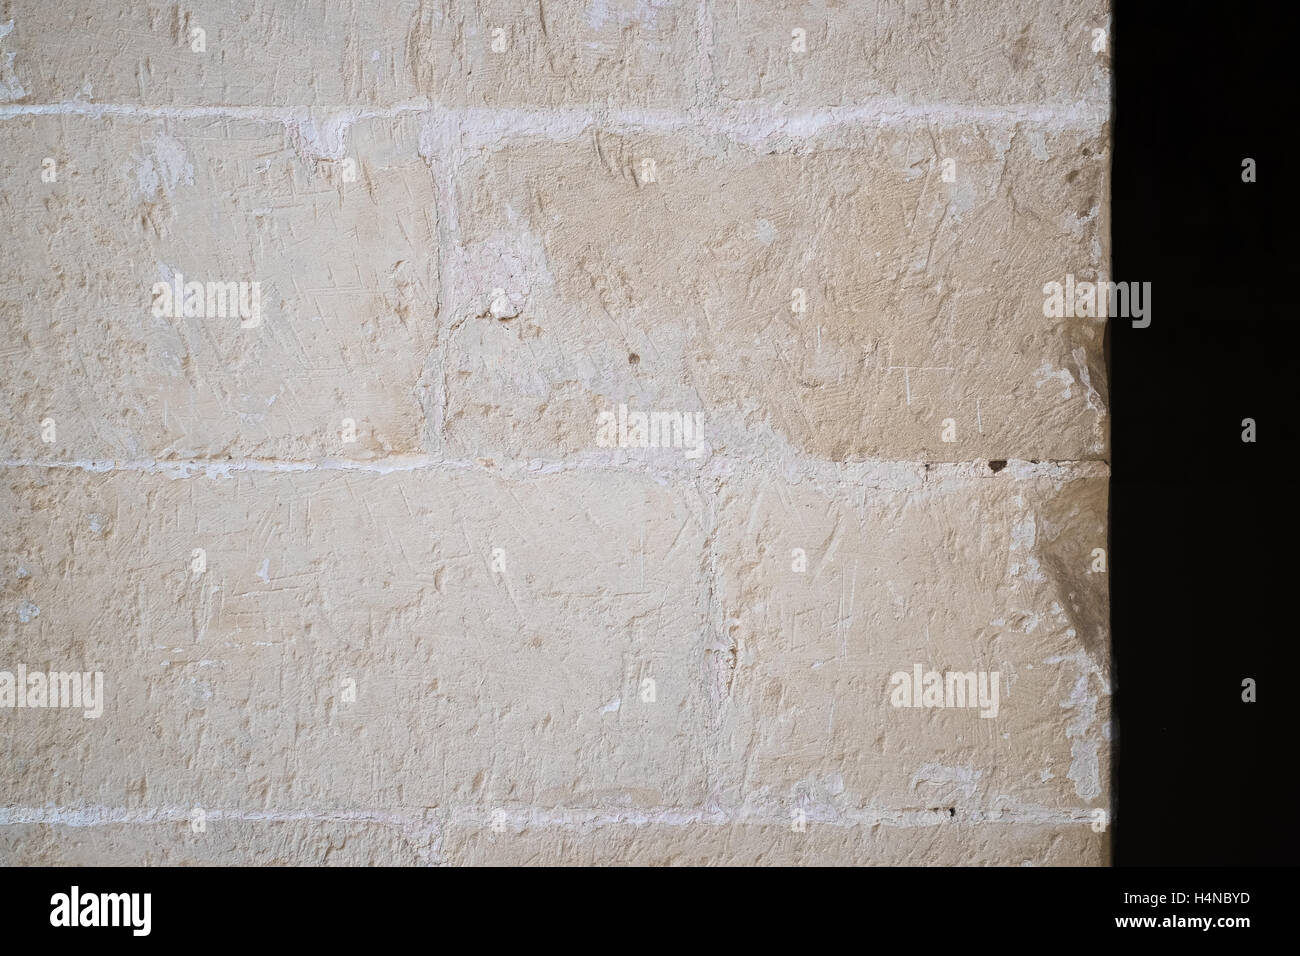 Bianco tradizionale muro di pietra. Dettaglio di un muro fatto di bianco calcare mattoni. Tracce visibili di scalpello. Foto Stock